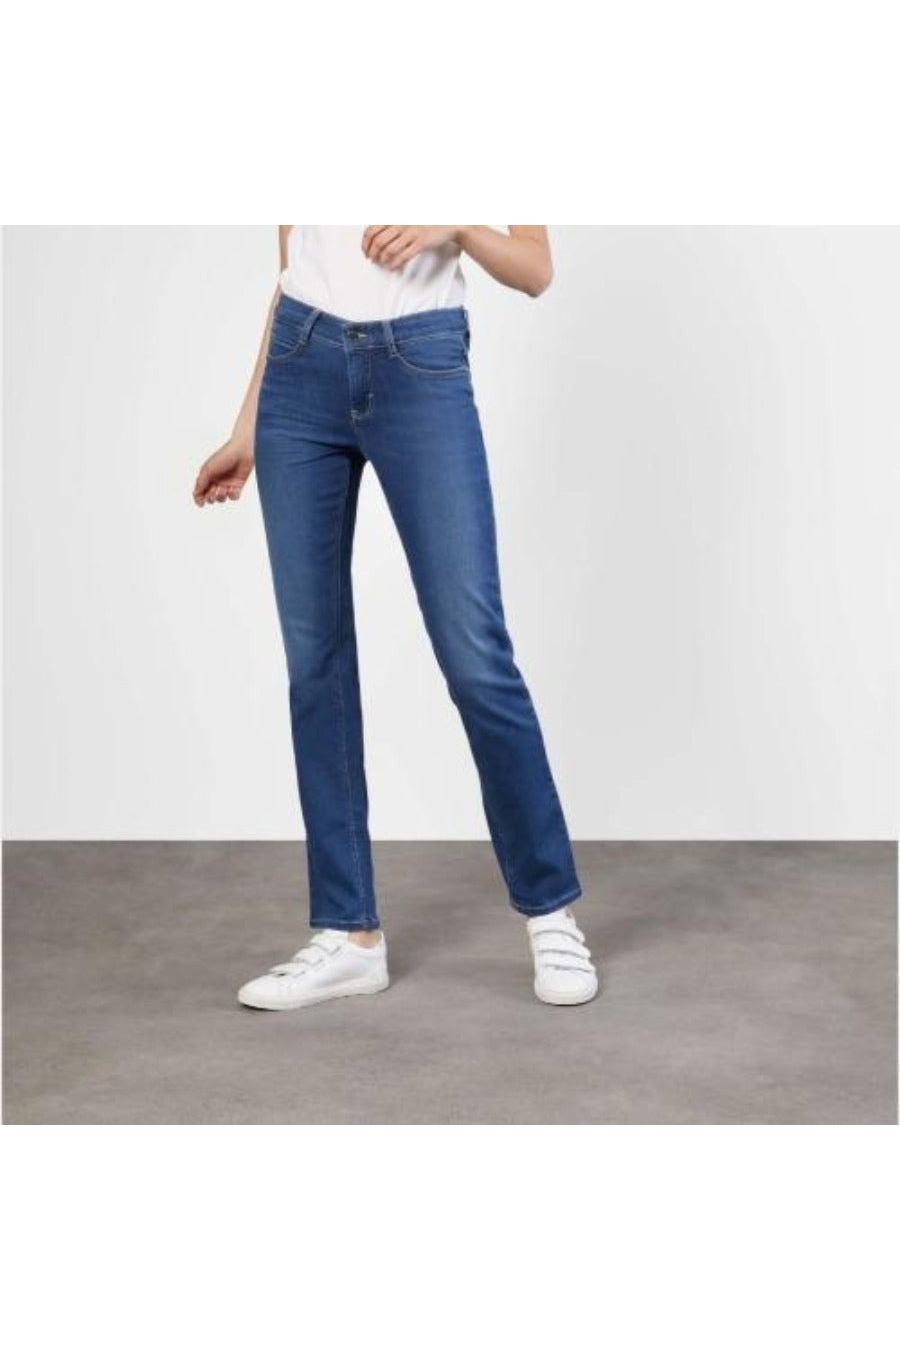 Mac Jeans Dream Denim Straight Legs 5401-90-355L